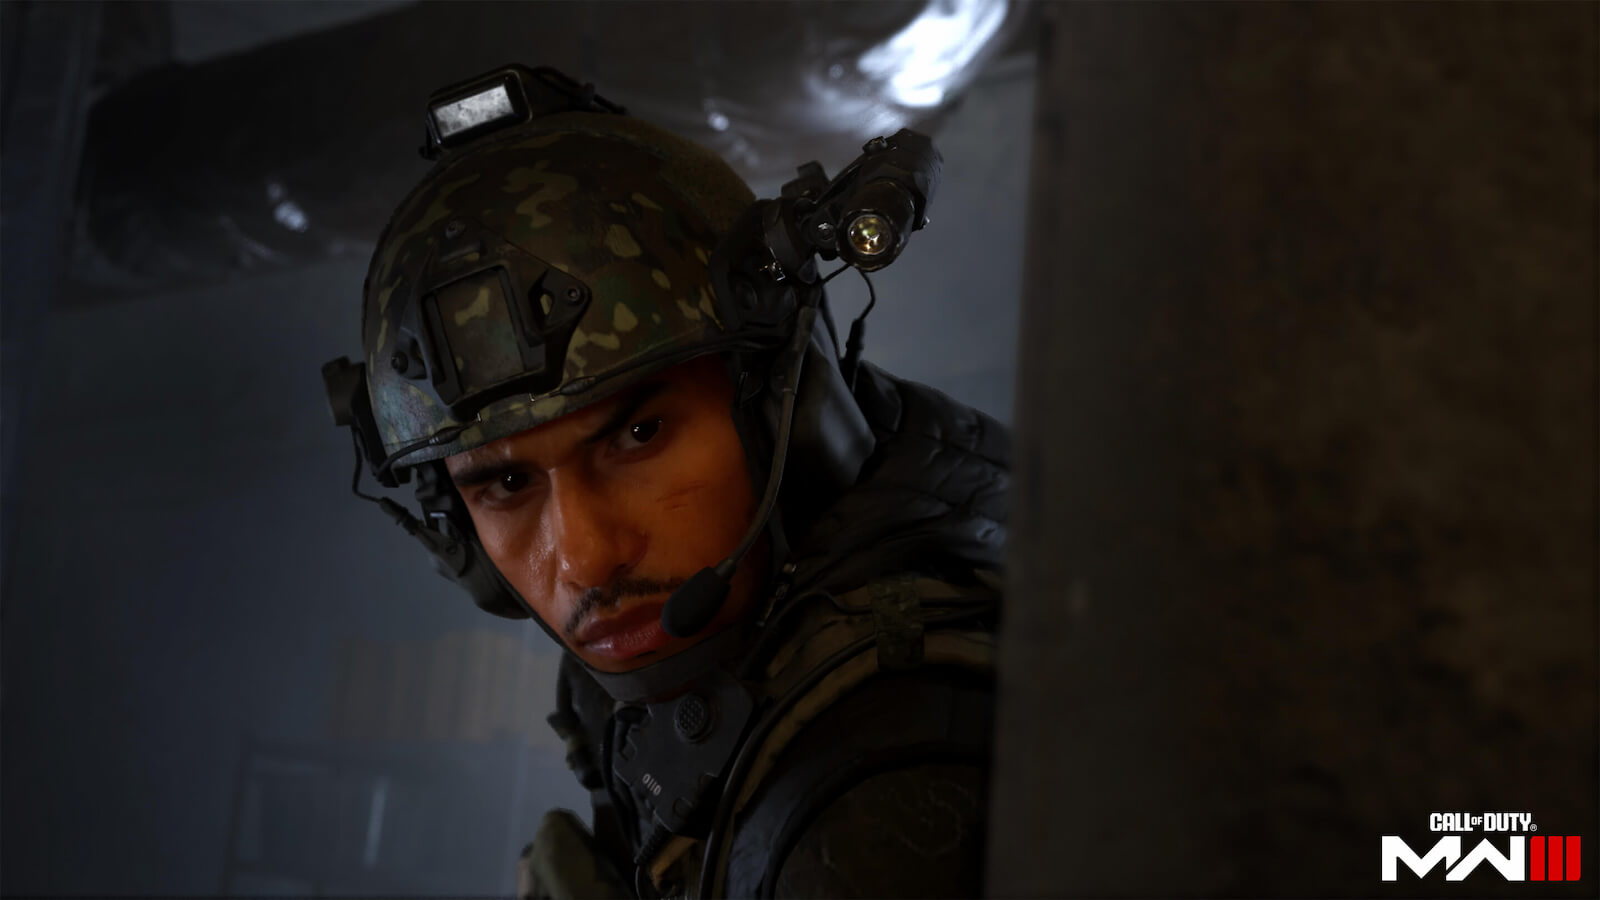 A Modern Warfare 3 játékosai azt állítják, hogy a játék „borzasztóan” néz ki a régi MW 2019-es verzióhoz képest